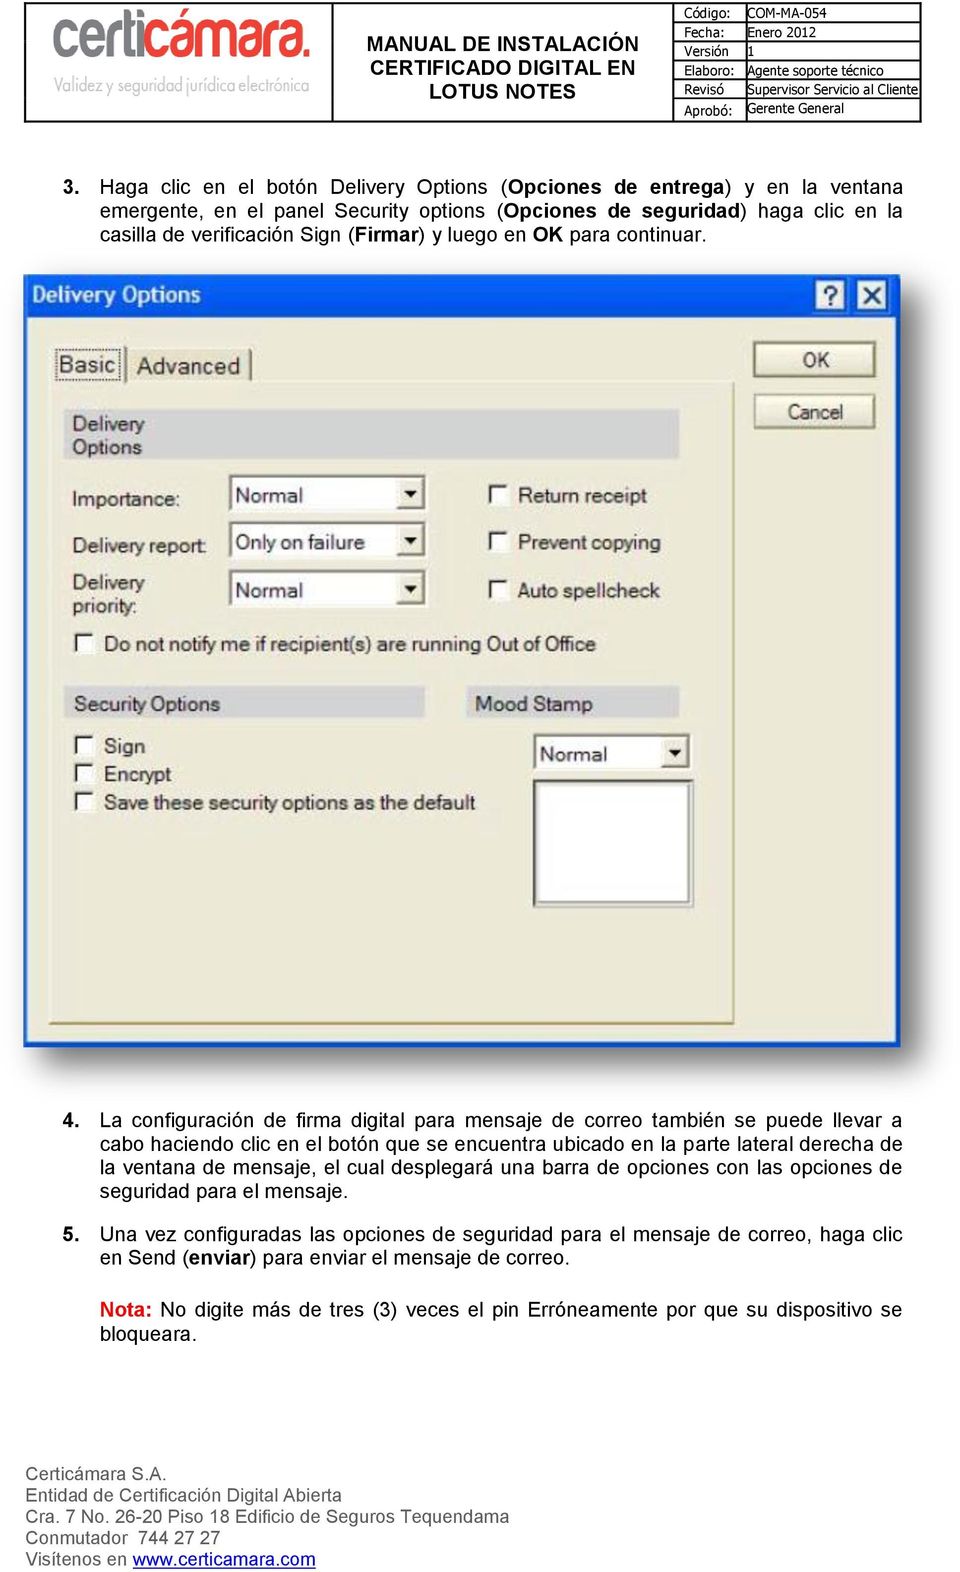 La configuración de firma digital para mensaje de correo también se puede llevar a cabo haciendo clic en el botón que se encuentra ubicado en la parte lateral derecha de la ventana de